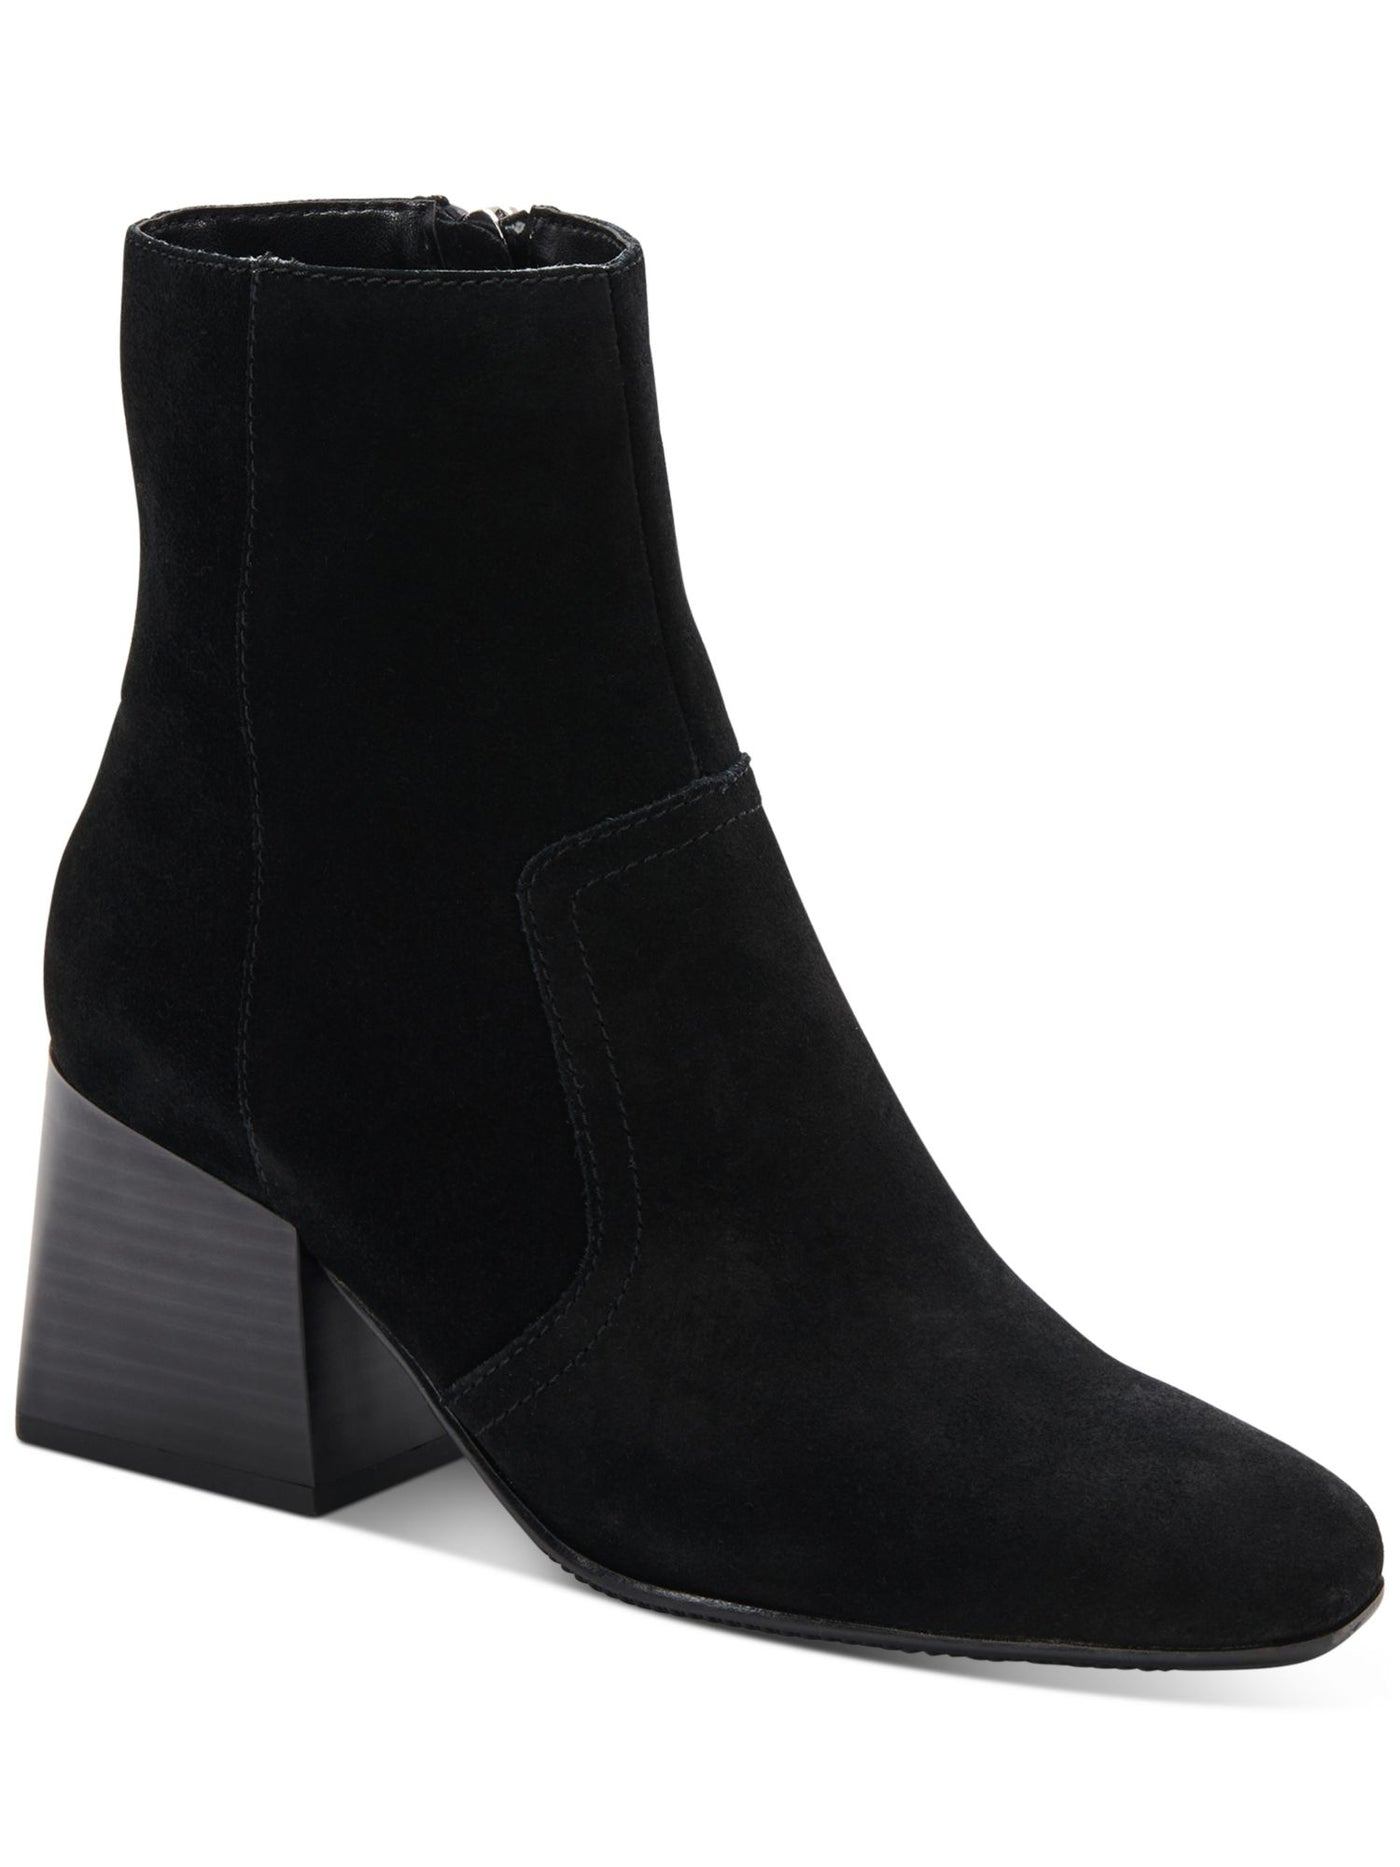 AQUA COLLEGE Womens Black Waterproof Tora Round Toe Block Heel Zip-Up Suede Heeled Boots 8 M